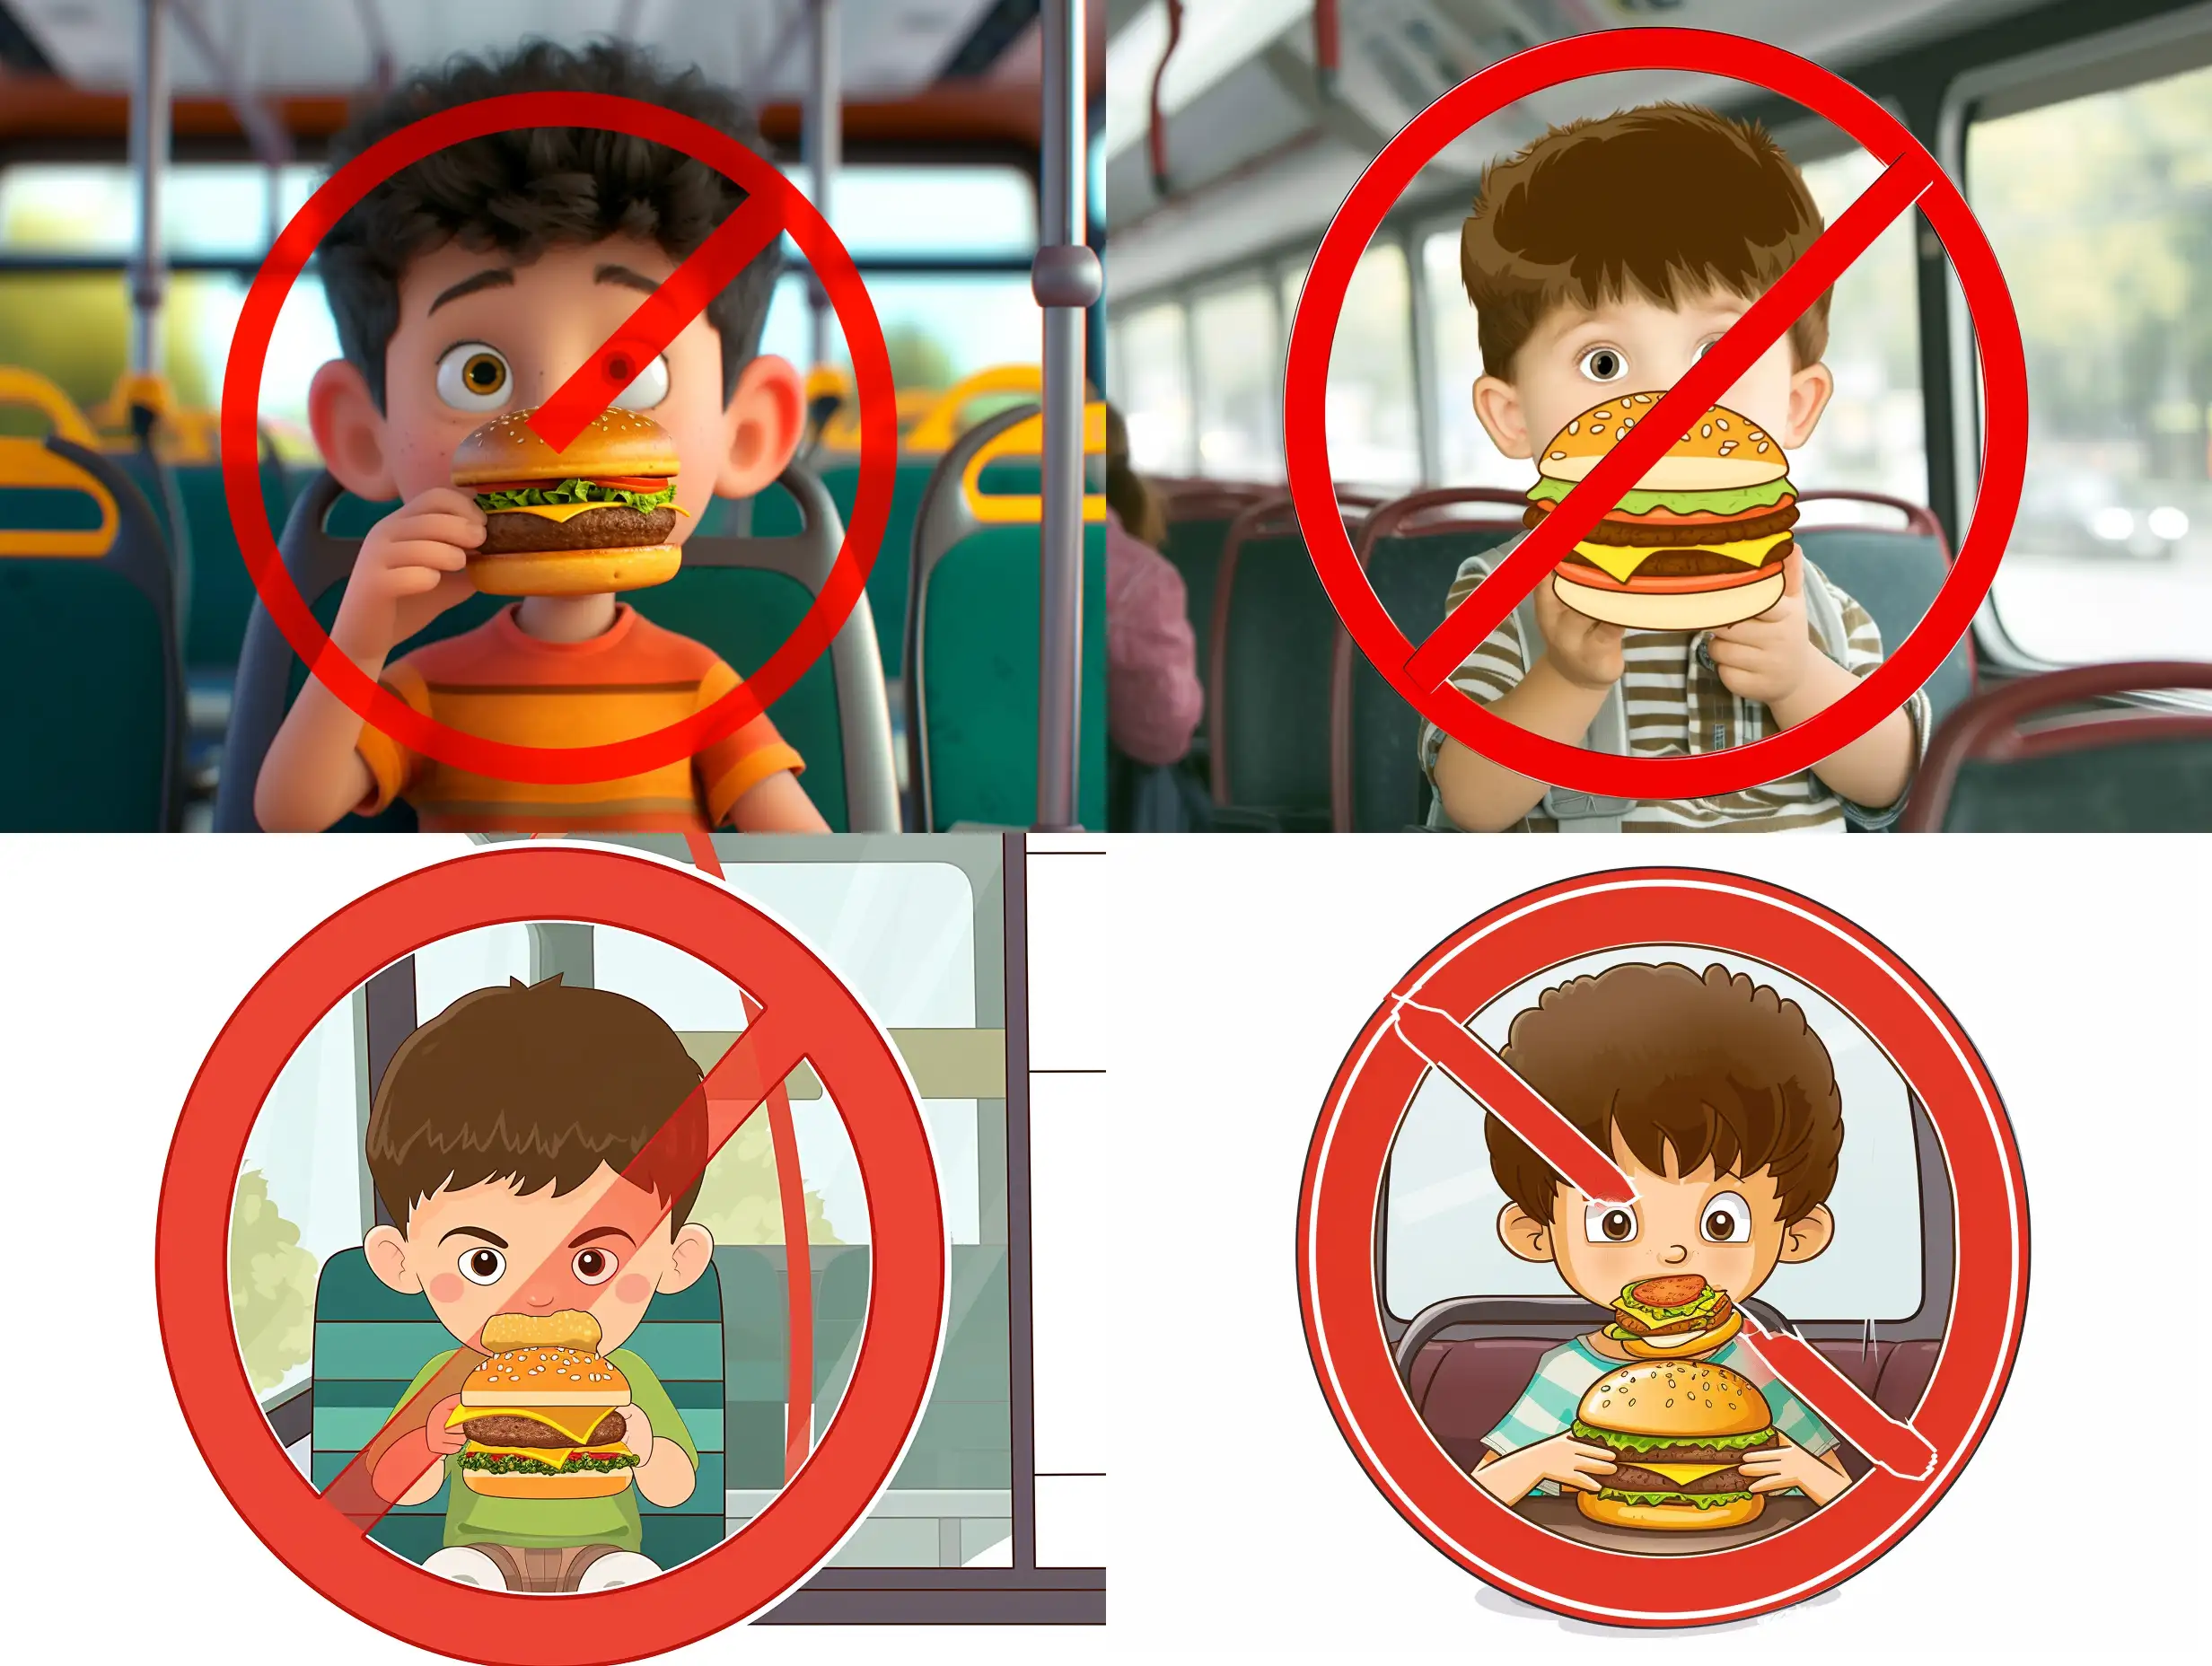 Картинка где мультяшный маленький мальчик ест гамбургер в автобусе и это все в красном кругу с чертой как в запрещающем знаке